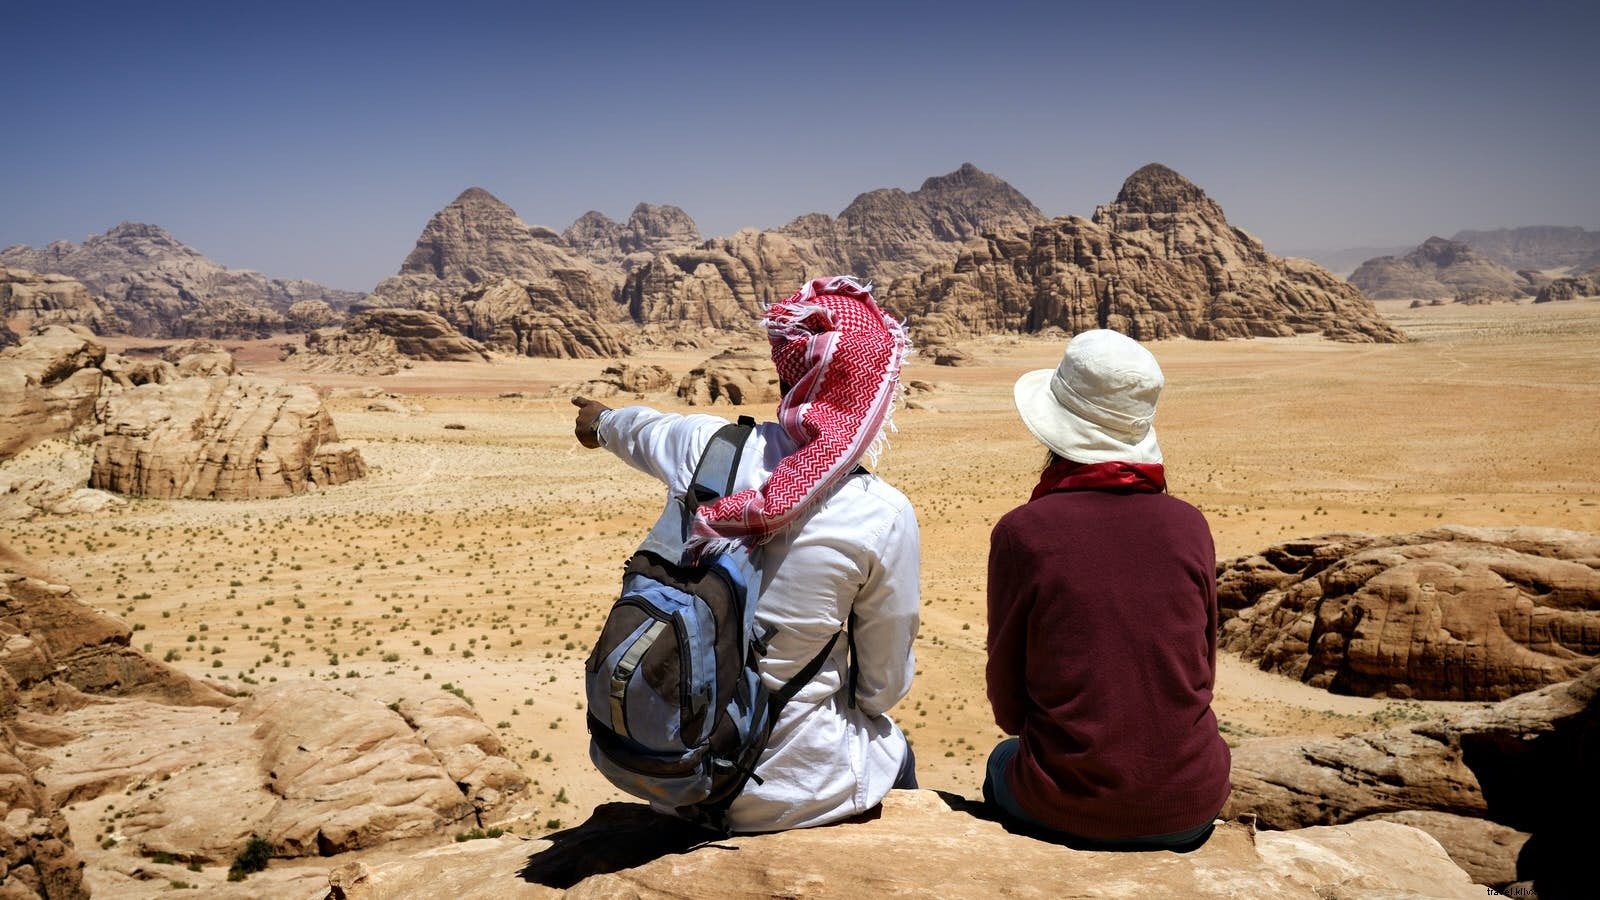 ヨルダンに旅行する前に知っておくべきトップ10の事柄 